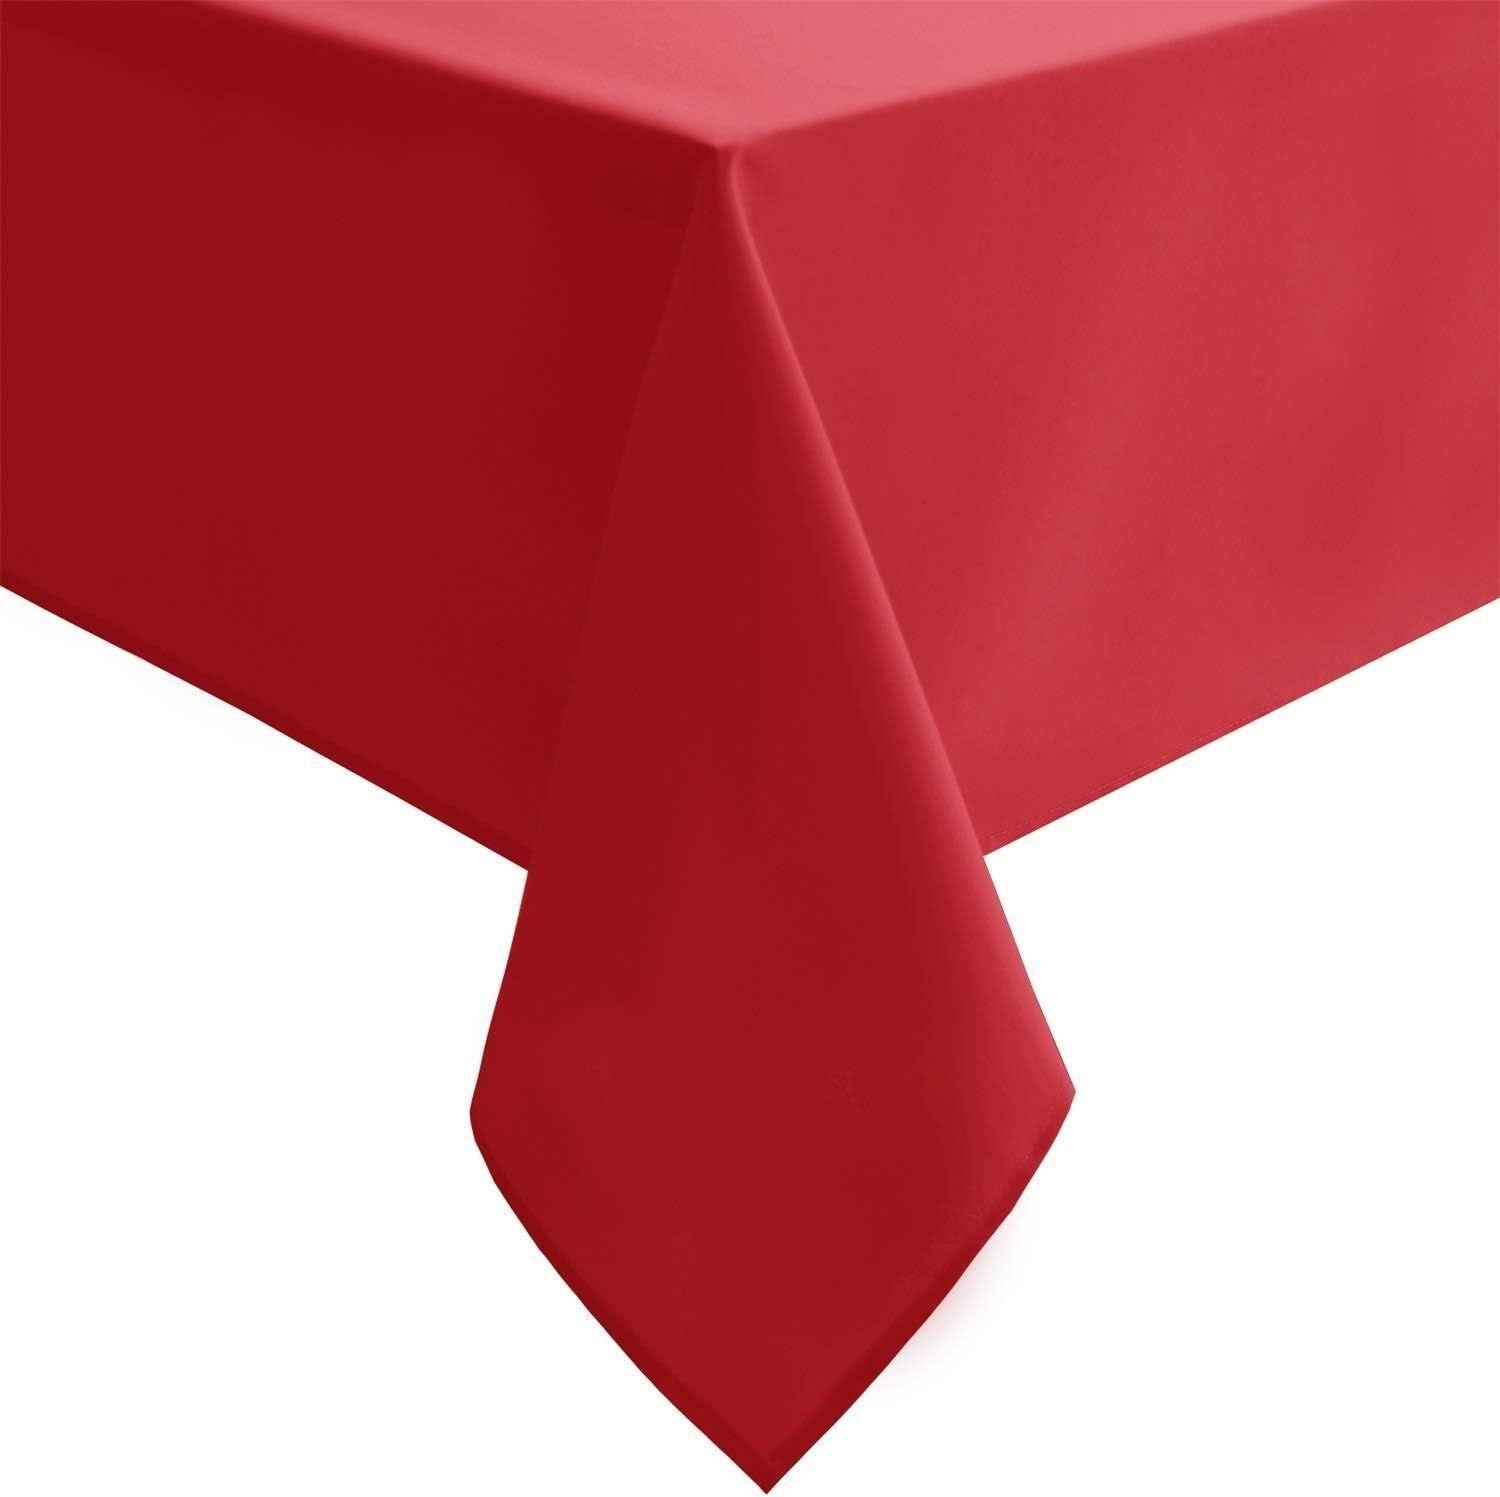 Hiasan Rectangle Tablecloth - Red - 54 x 80 In.